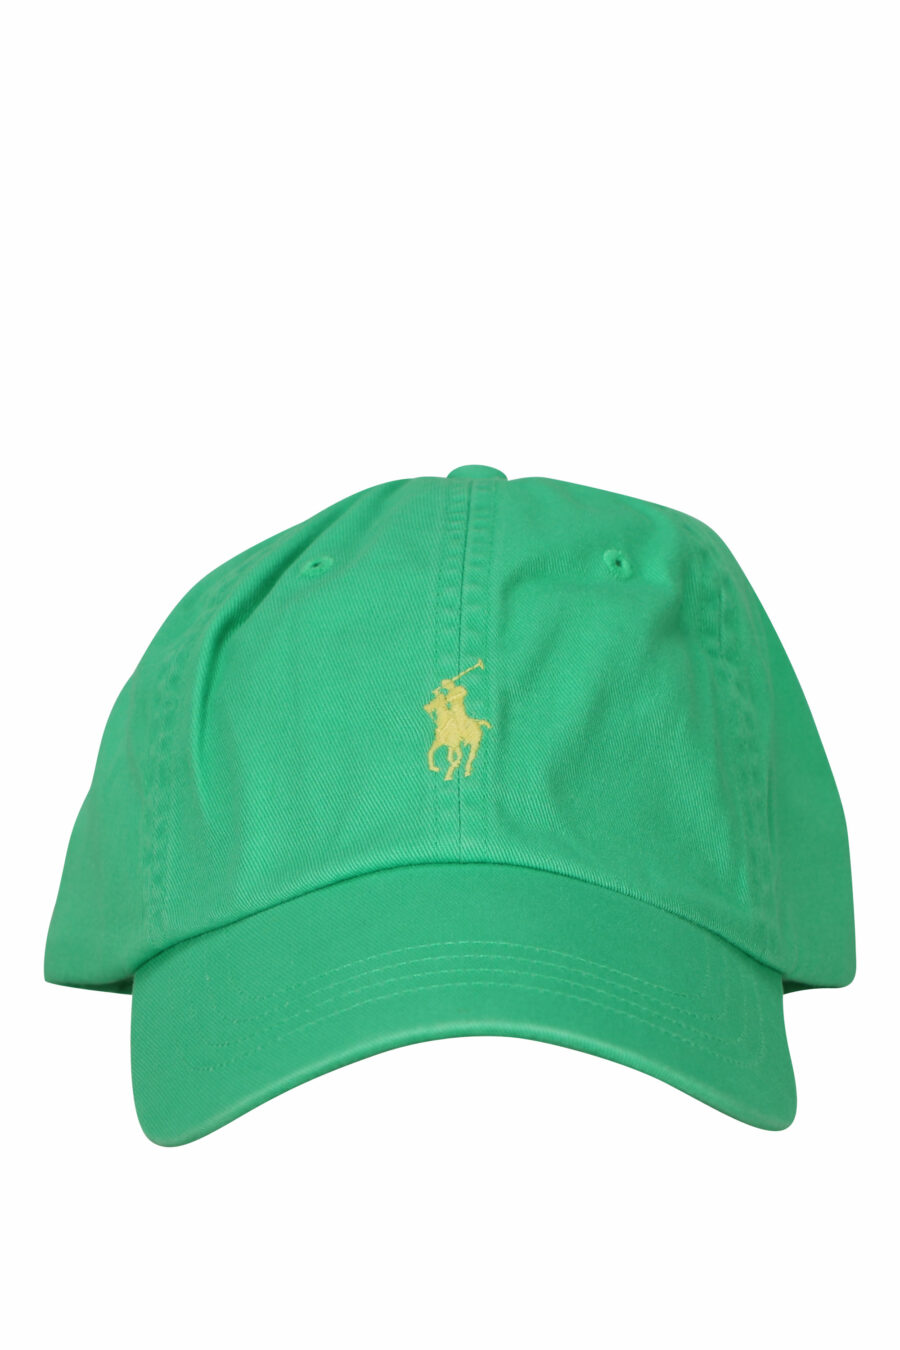 Casquette verte avec mini-logo "polo" - 3616535875623